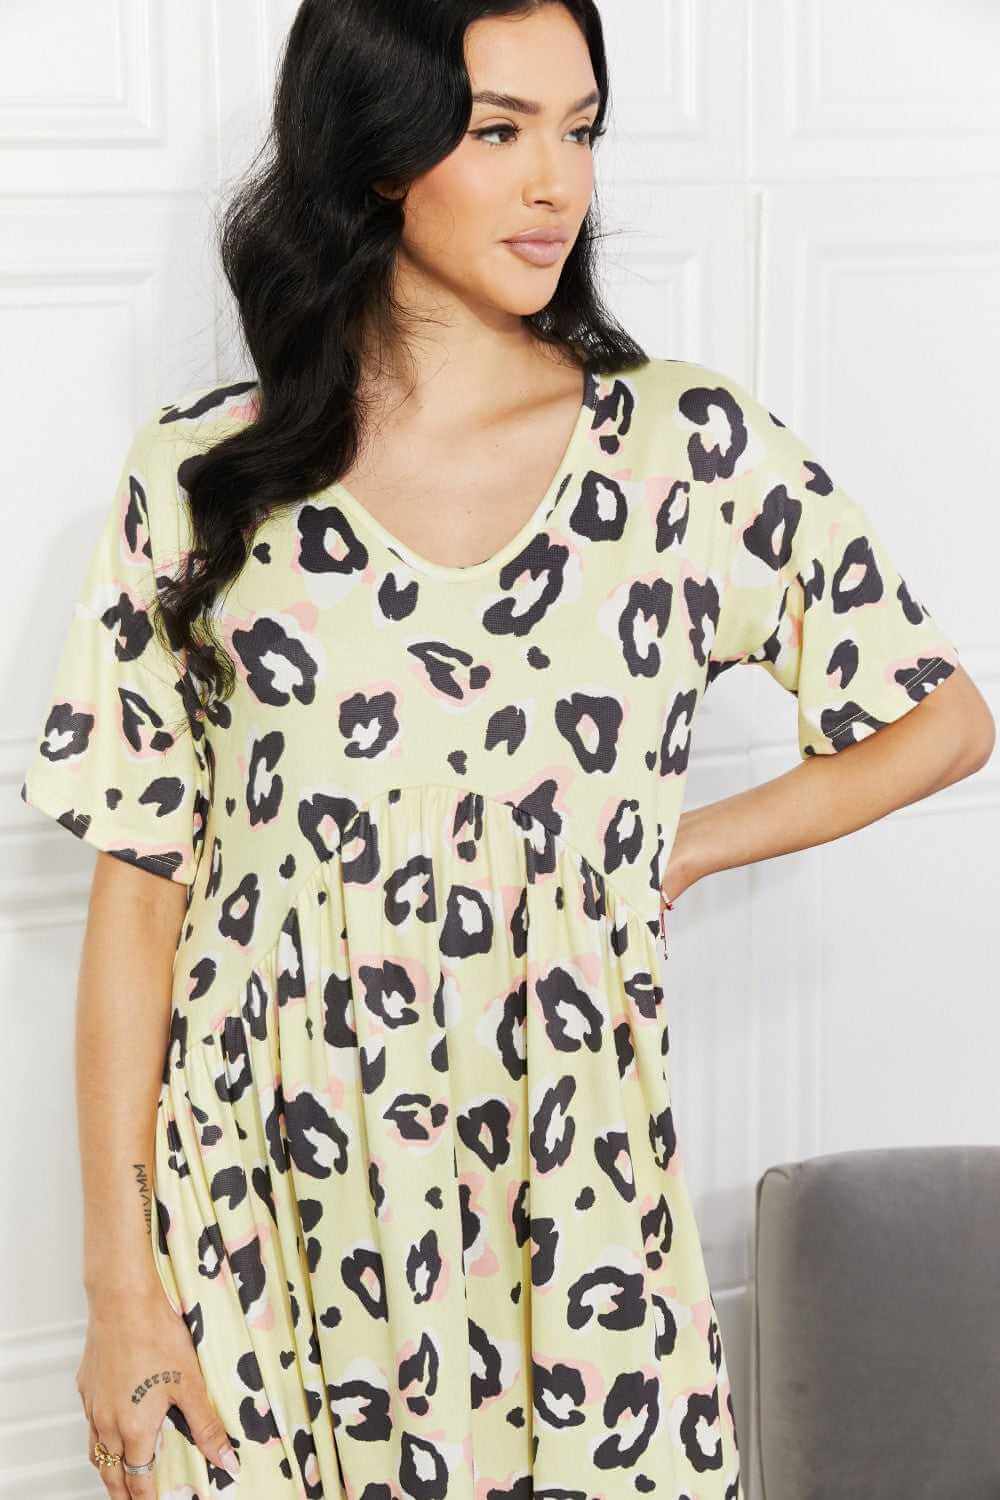 Leopard Print Mini Dress - Rocca & Co